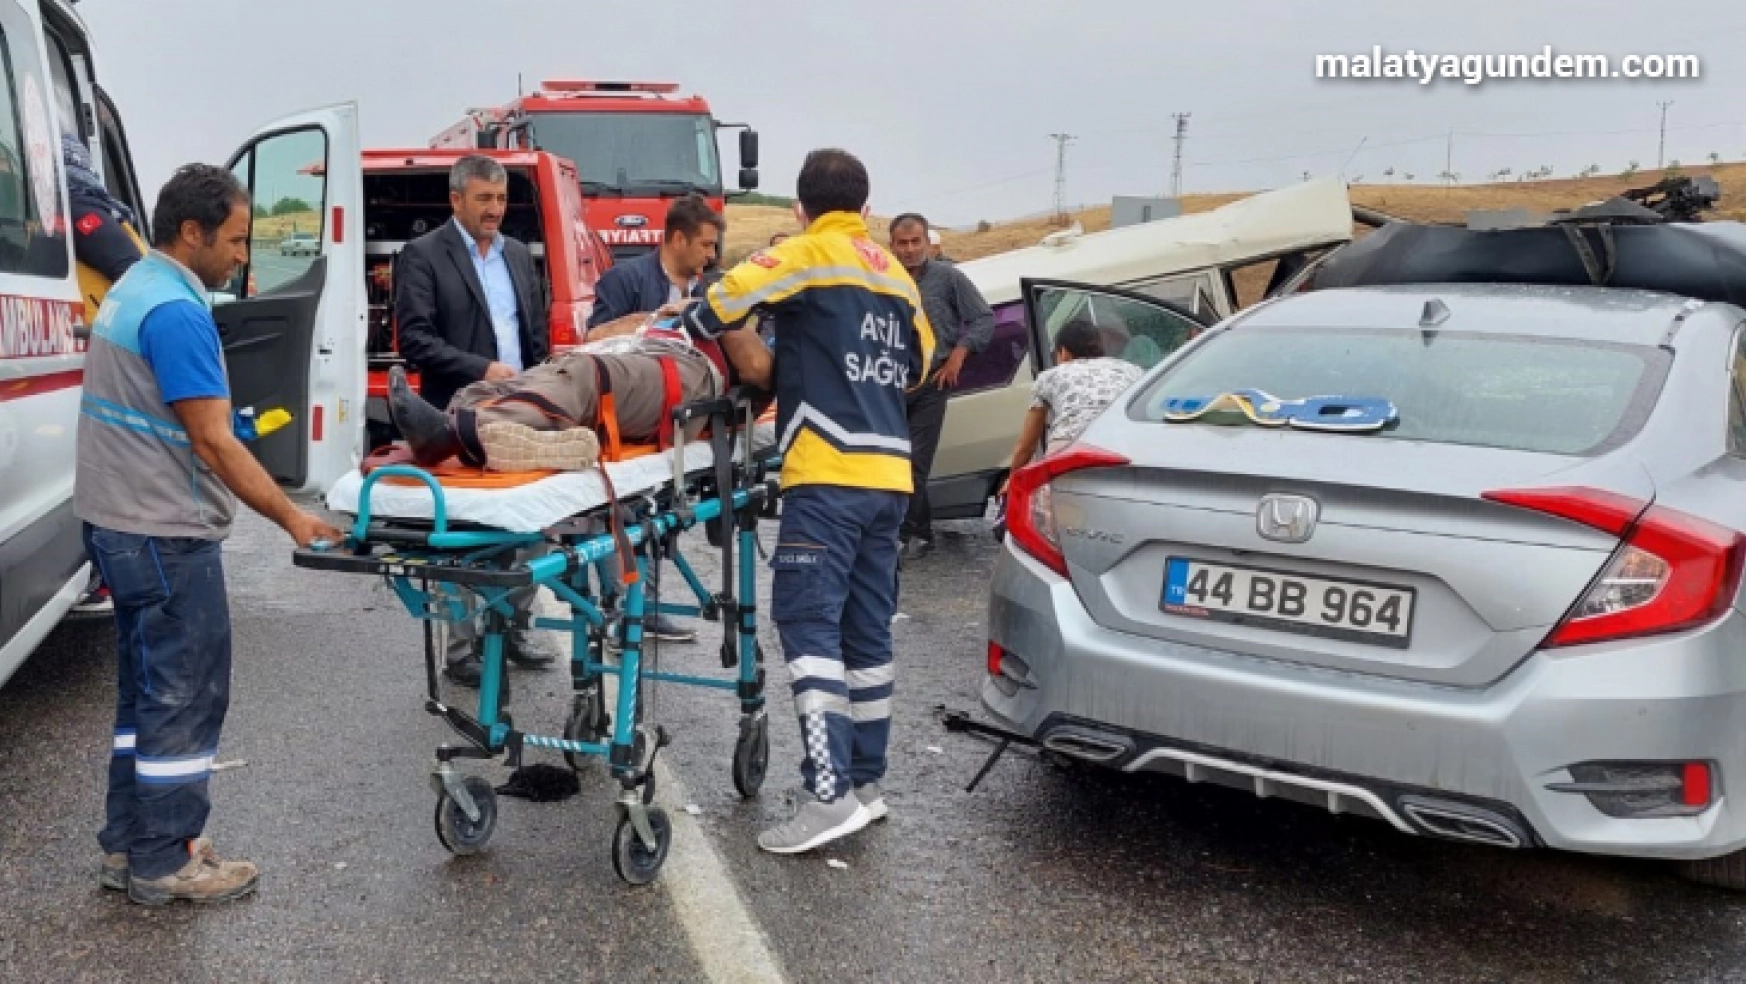 Malatya'da feci kaza: 1 ölü, 4 yaralı